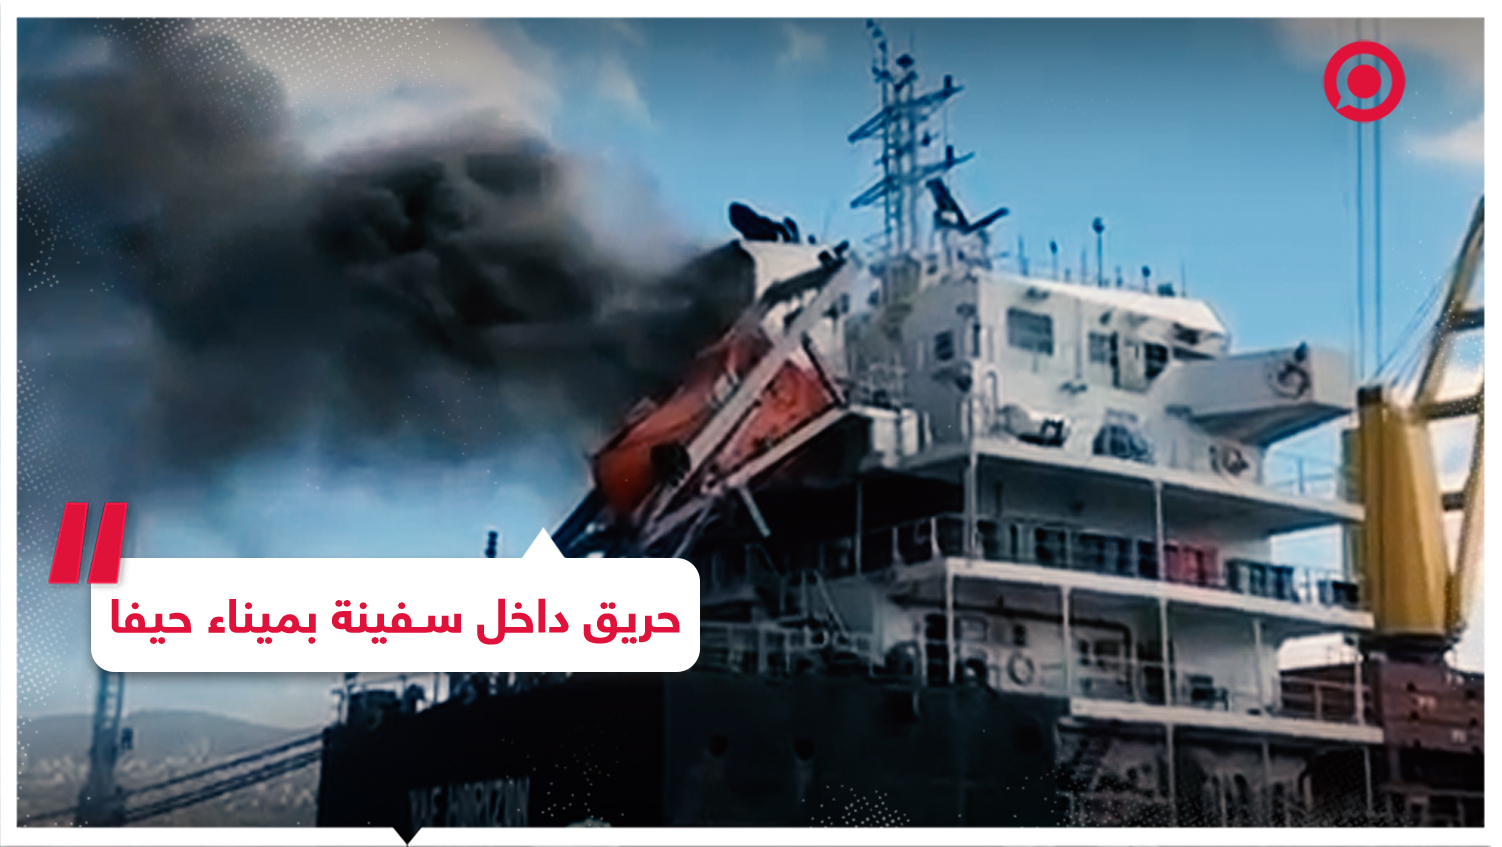 اندلاع حريق ضخم داخل سفينة بميناء حيفا والسلطات الإسرائيلية تجري تحقيقا في الحادثة